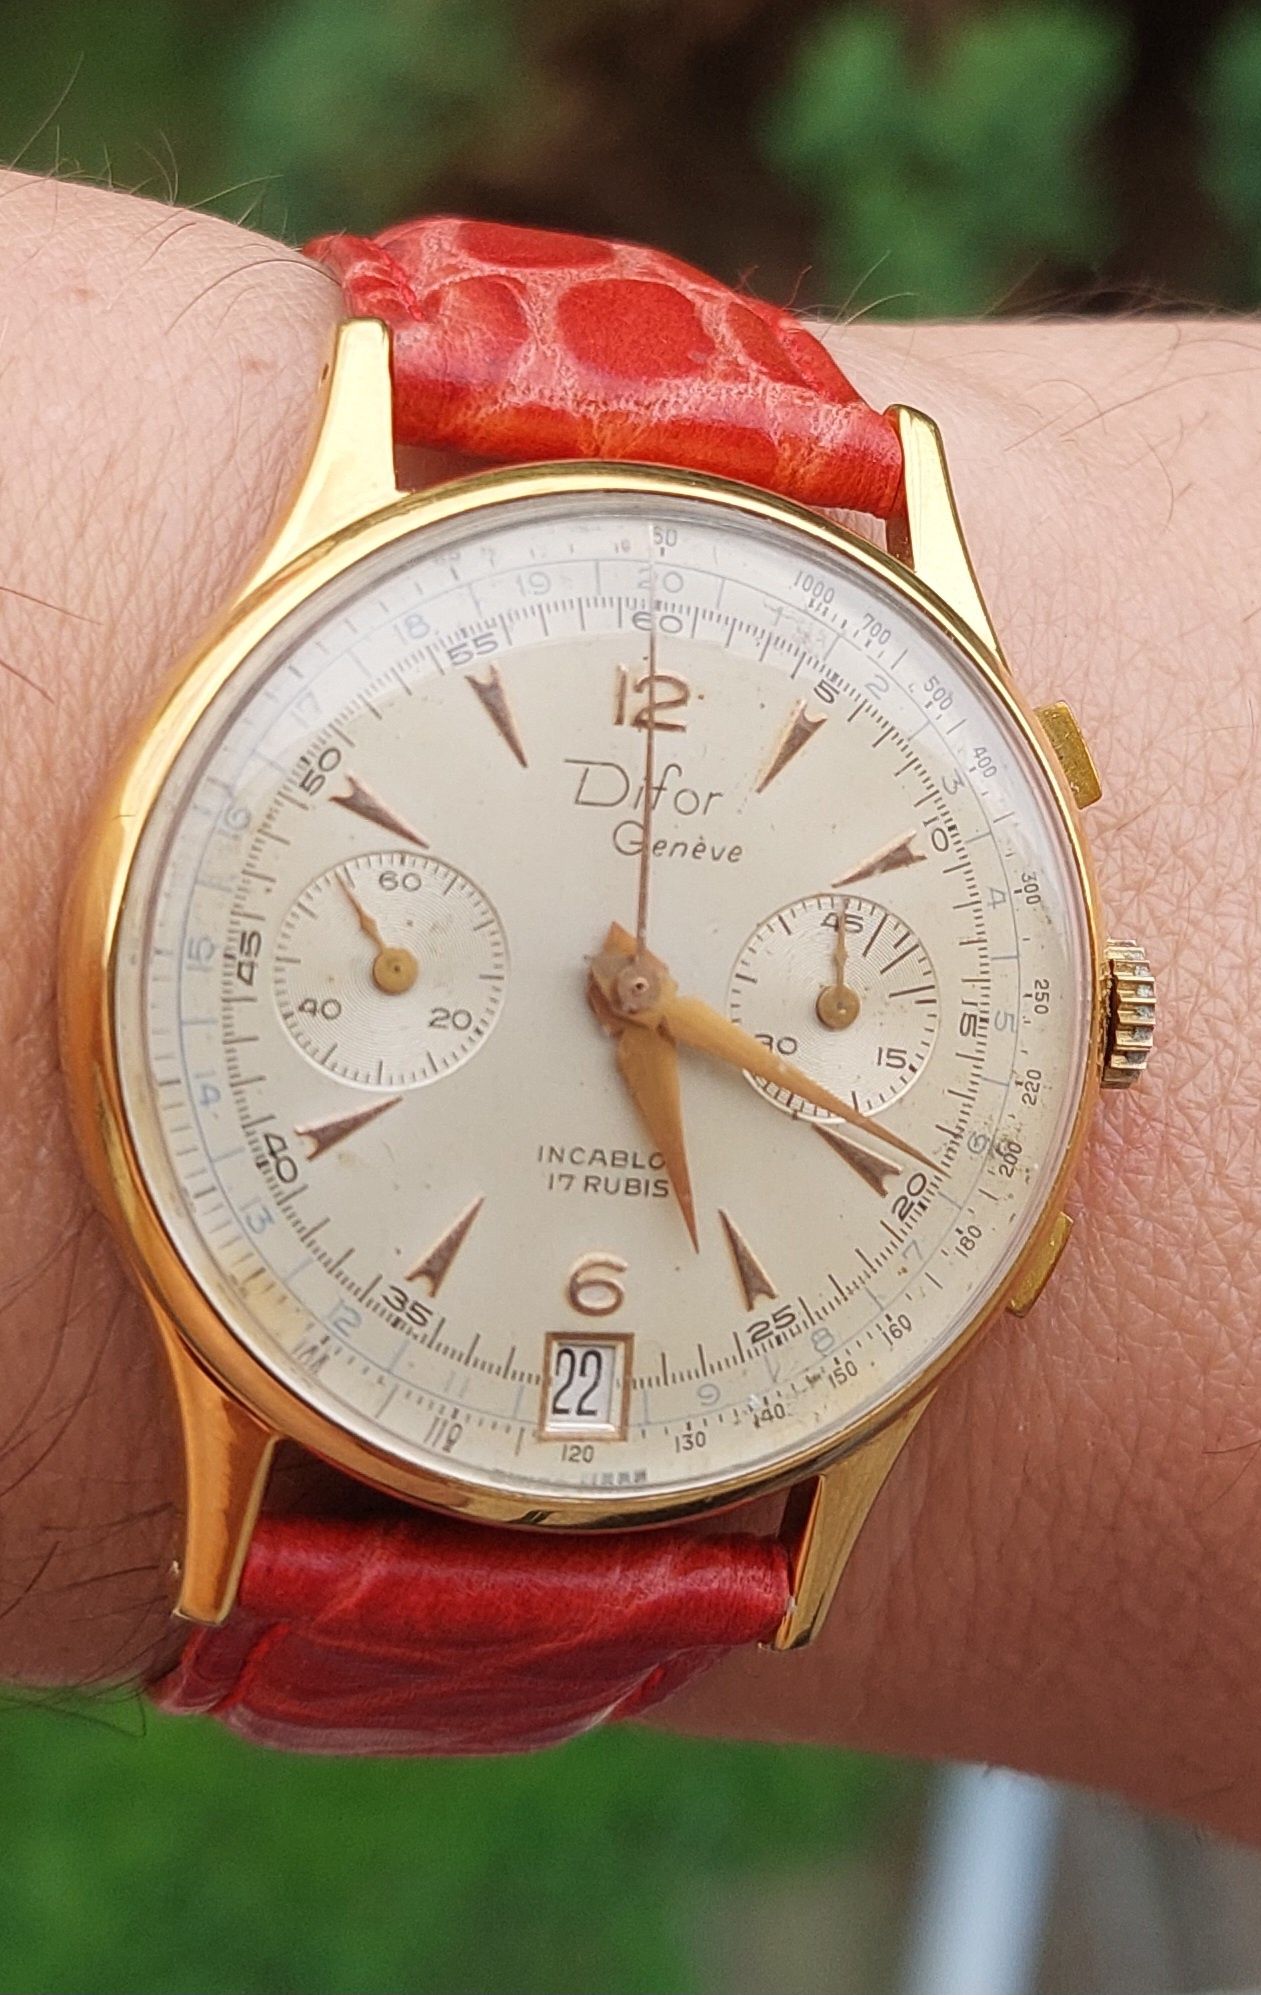 Zegarek Difor geneve chronograf piękny